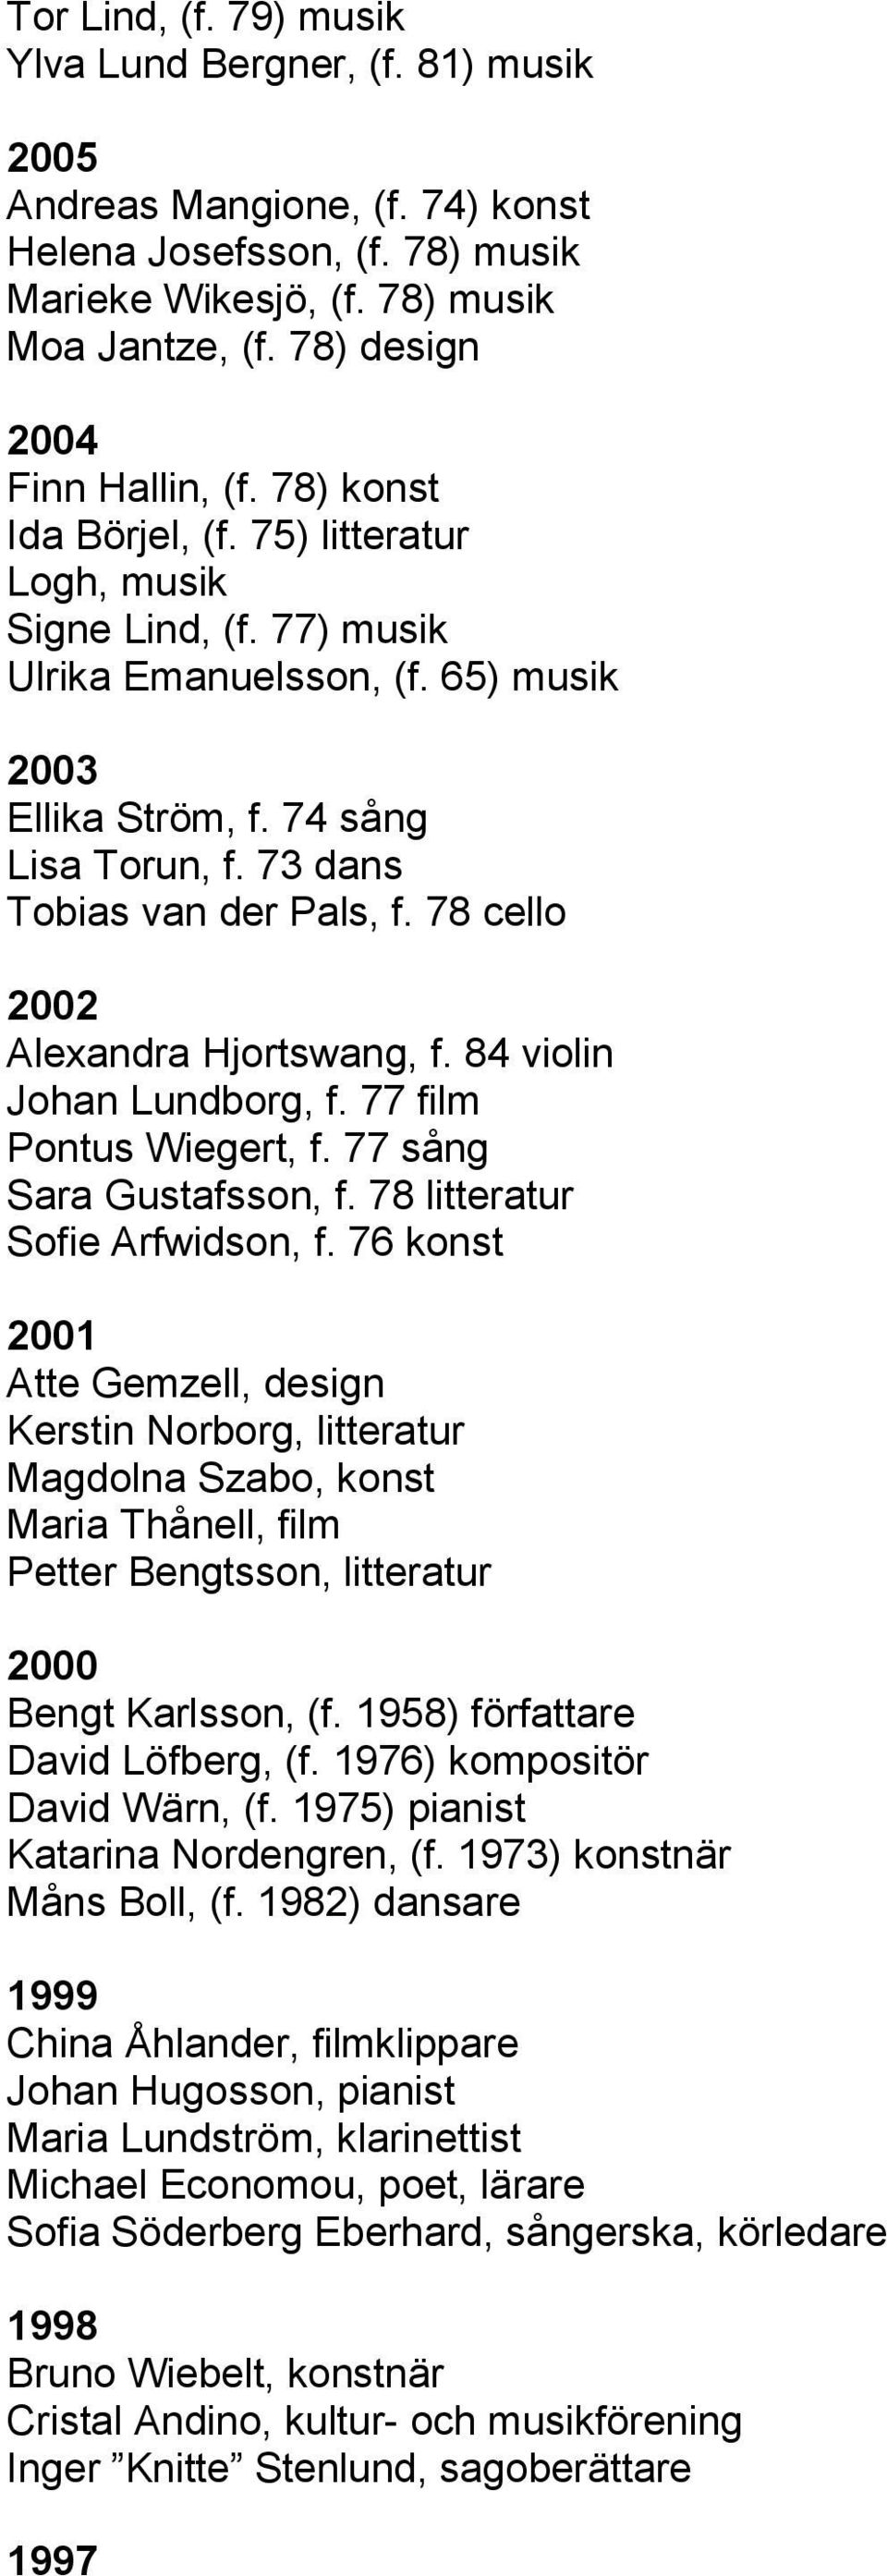 73 dans Tobias van der Pals, f. 78 cello 2002 Alexandra Hjortswang, f. 84 violin Johan Lundborg, f. 77 film Pontus Wiegert, f. 77 sång Sara Gustafsson, f. 78 litteratur Sofie Arfwidson, f.